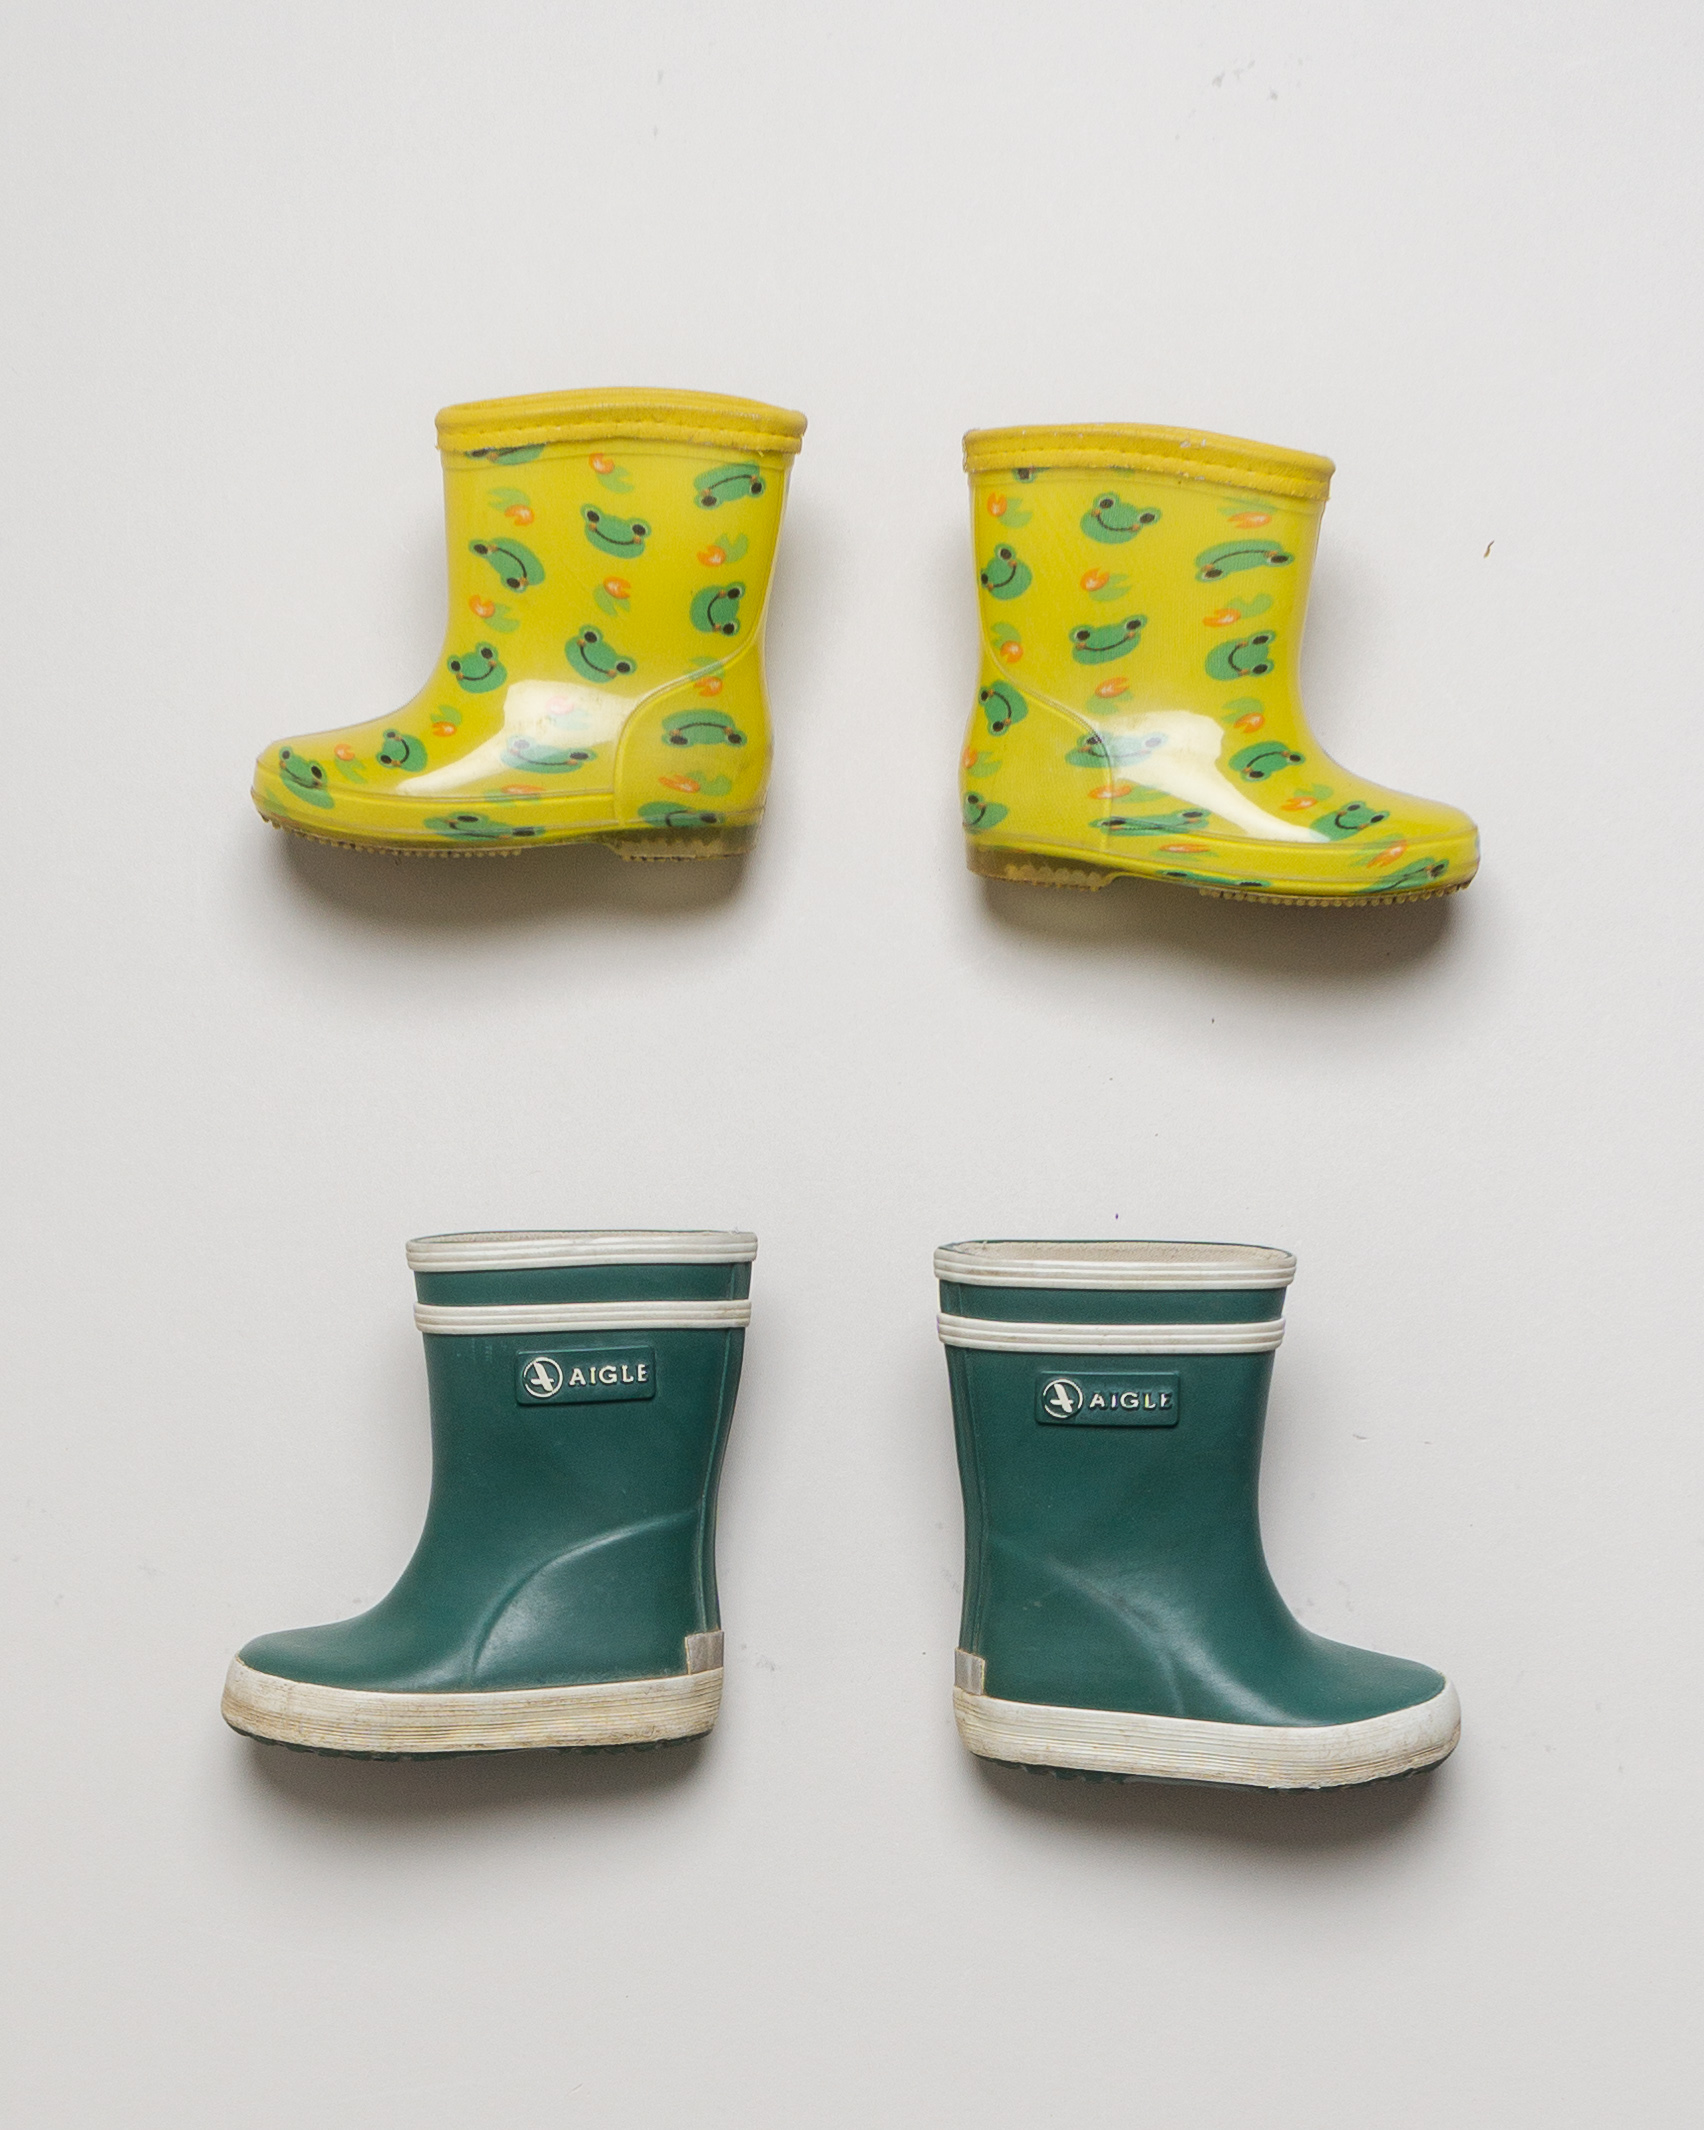 1 Paar Schuhe Gr. 21 – Aigle Gummistiefel Regen Matsch Gelb Grün Frosch Tiere